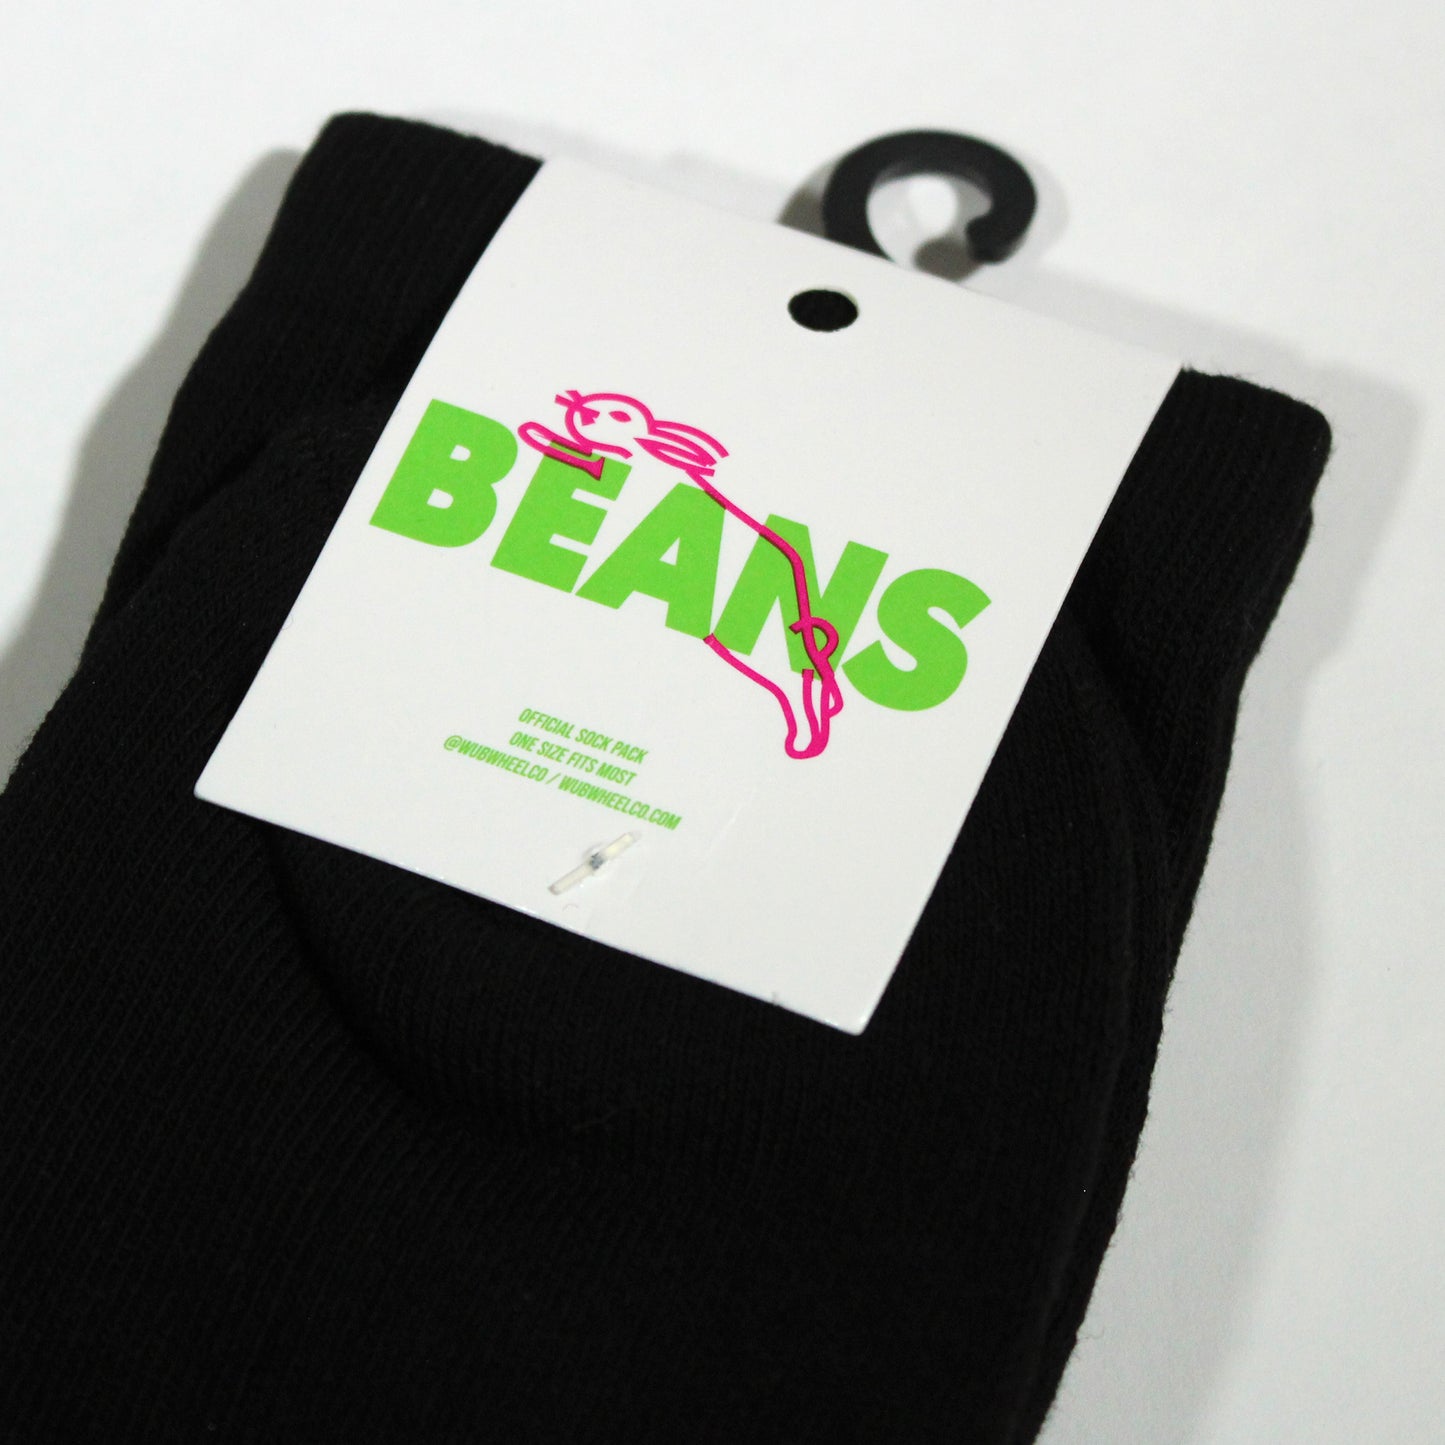 Beans Socks - Black